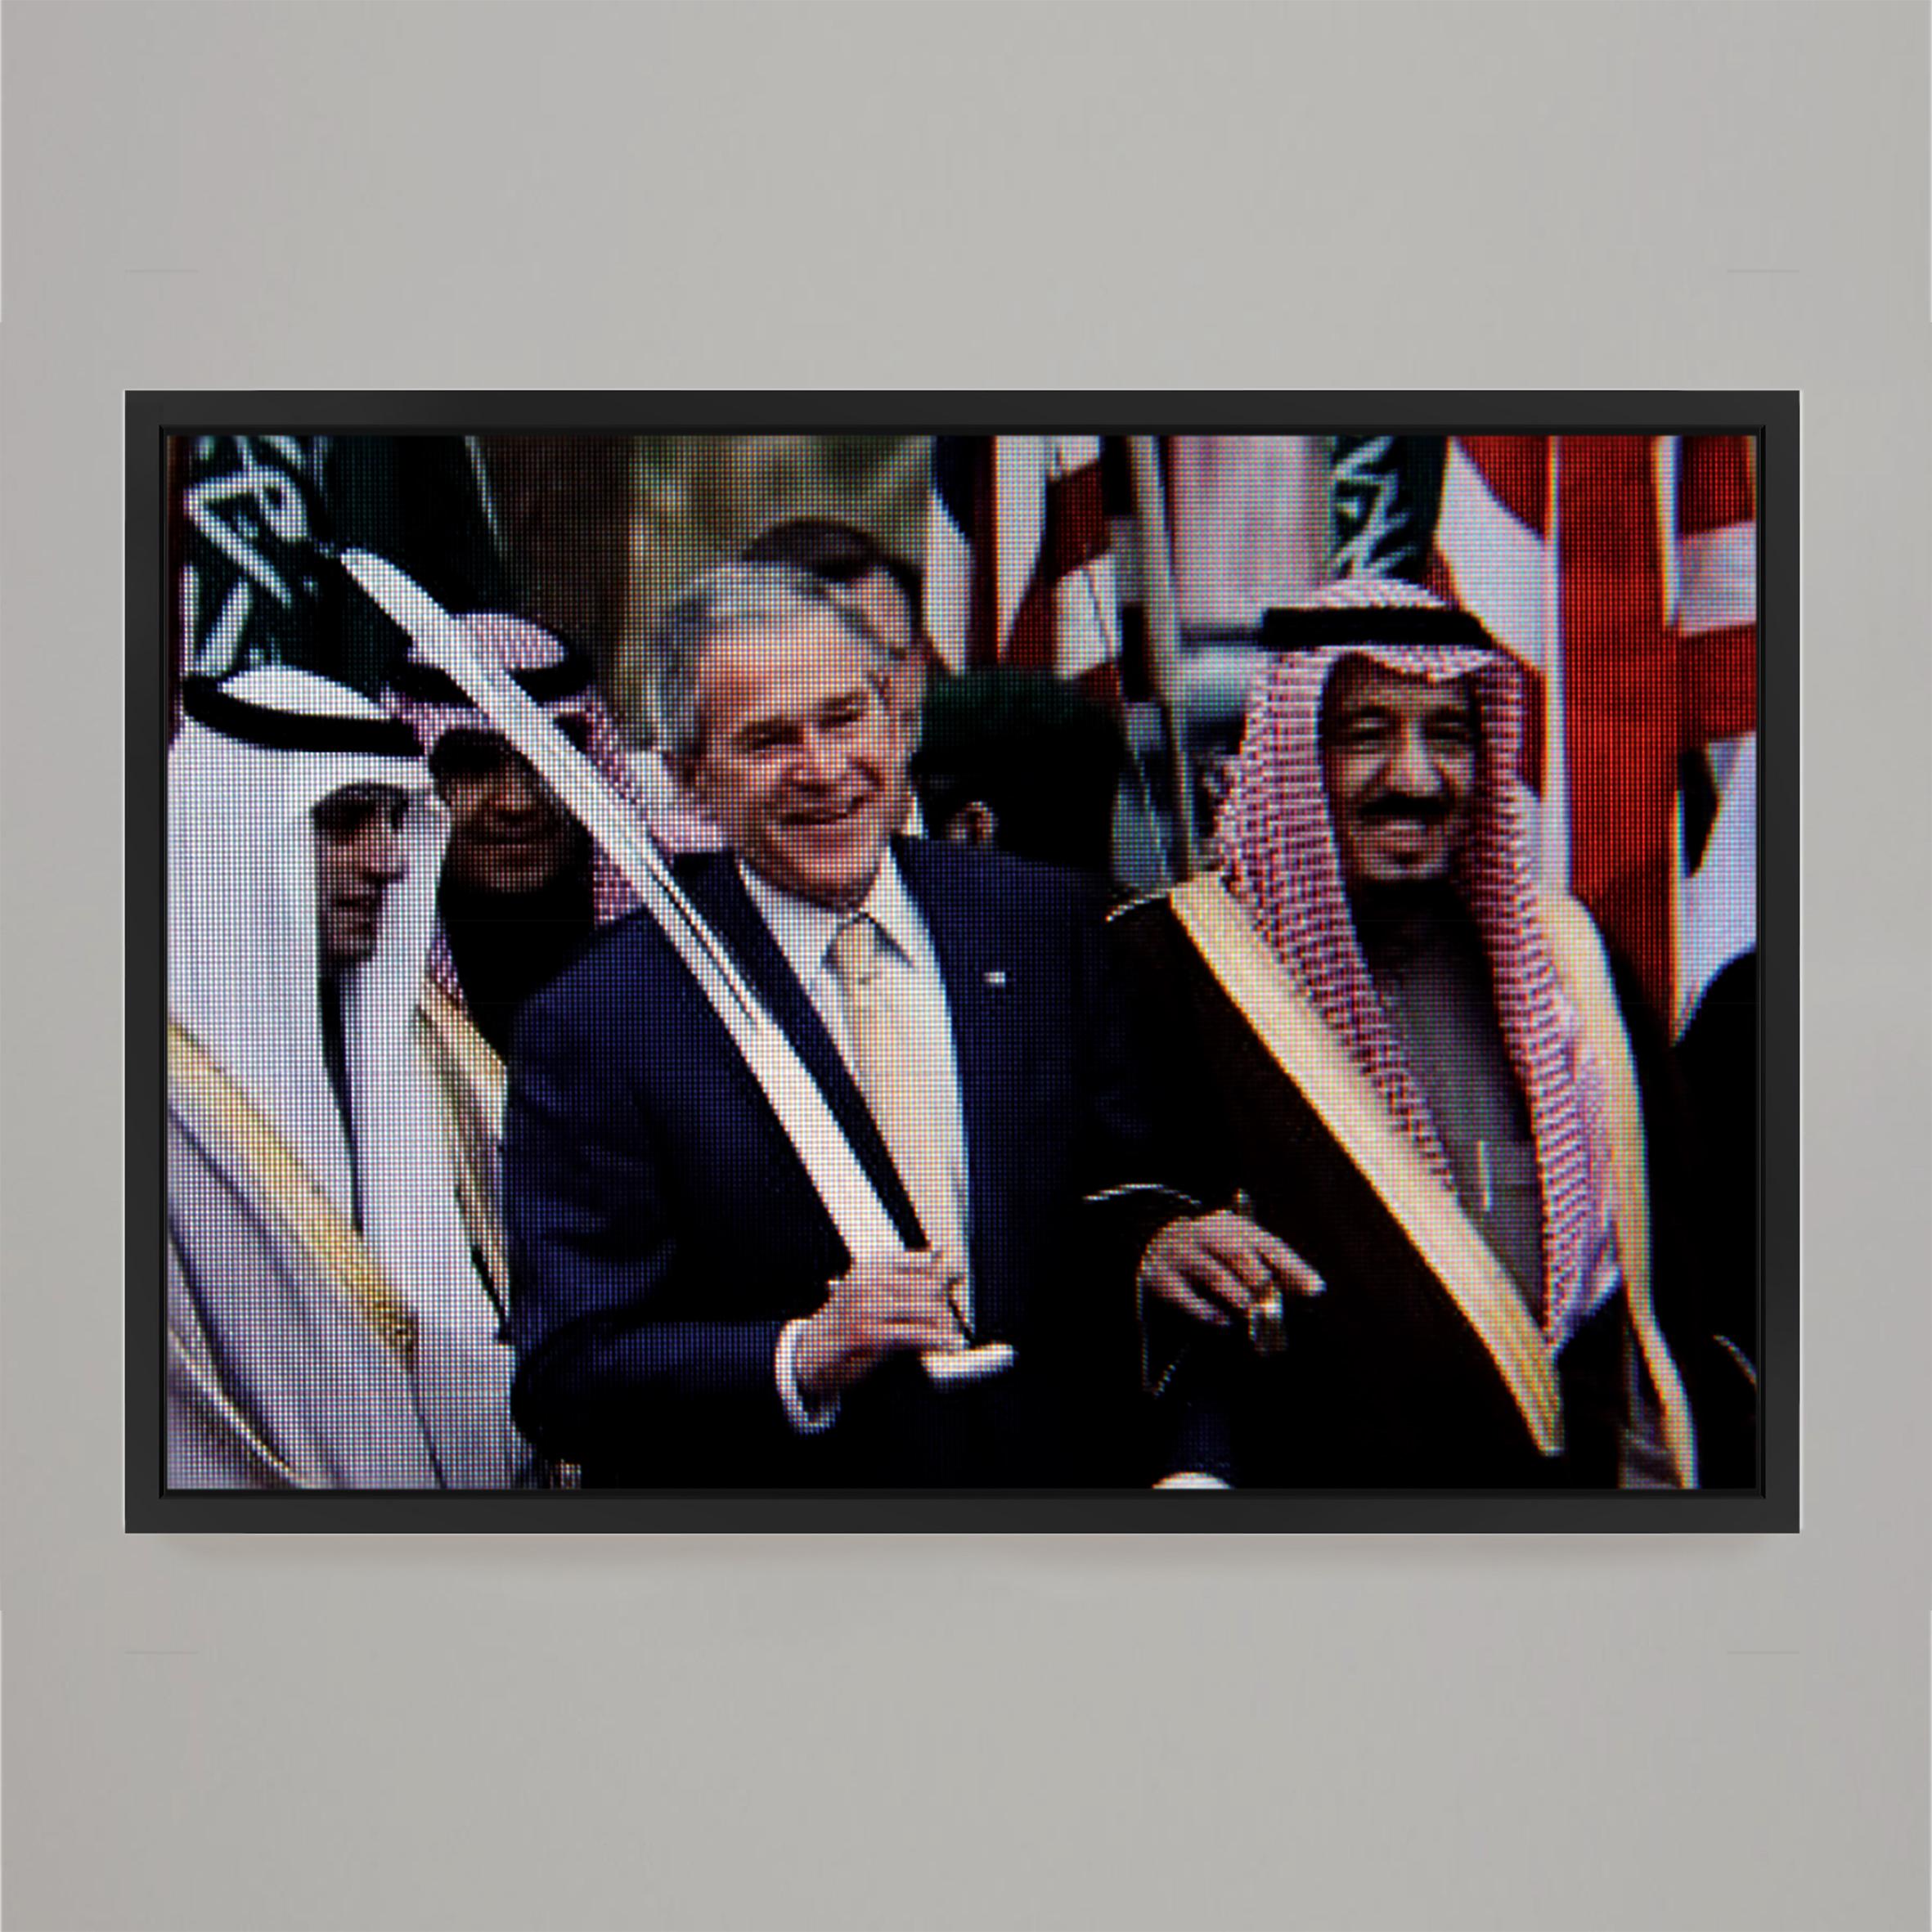 George W. Bush, 2009
Photographie sur aluminium 
180 x 120 cm